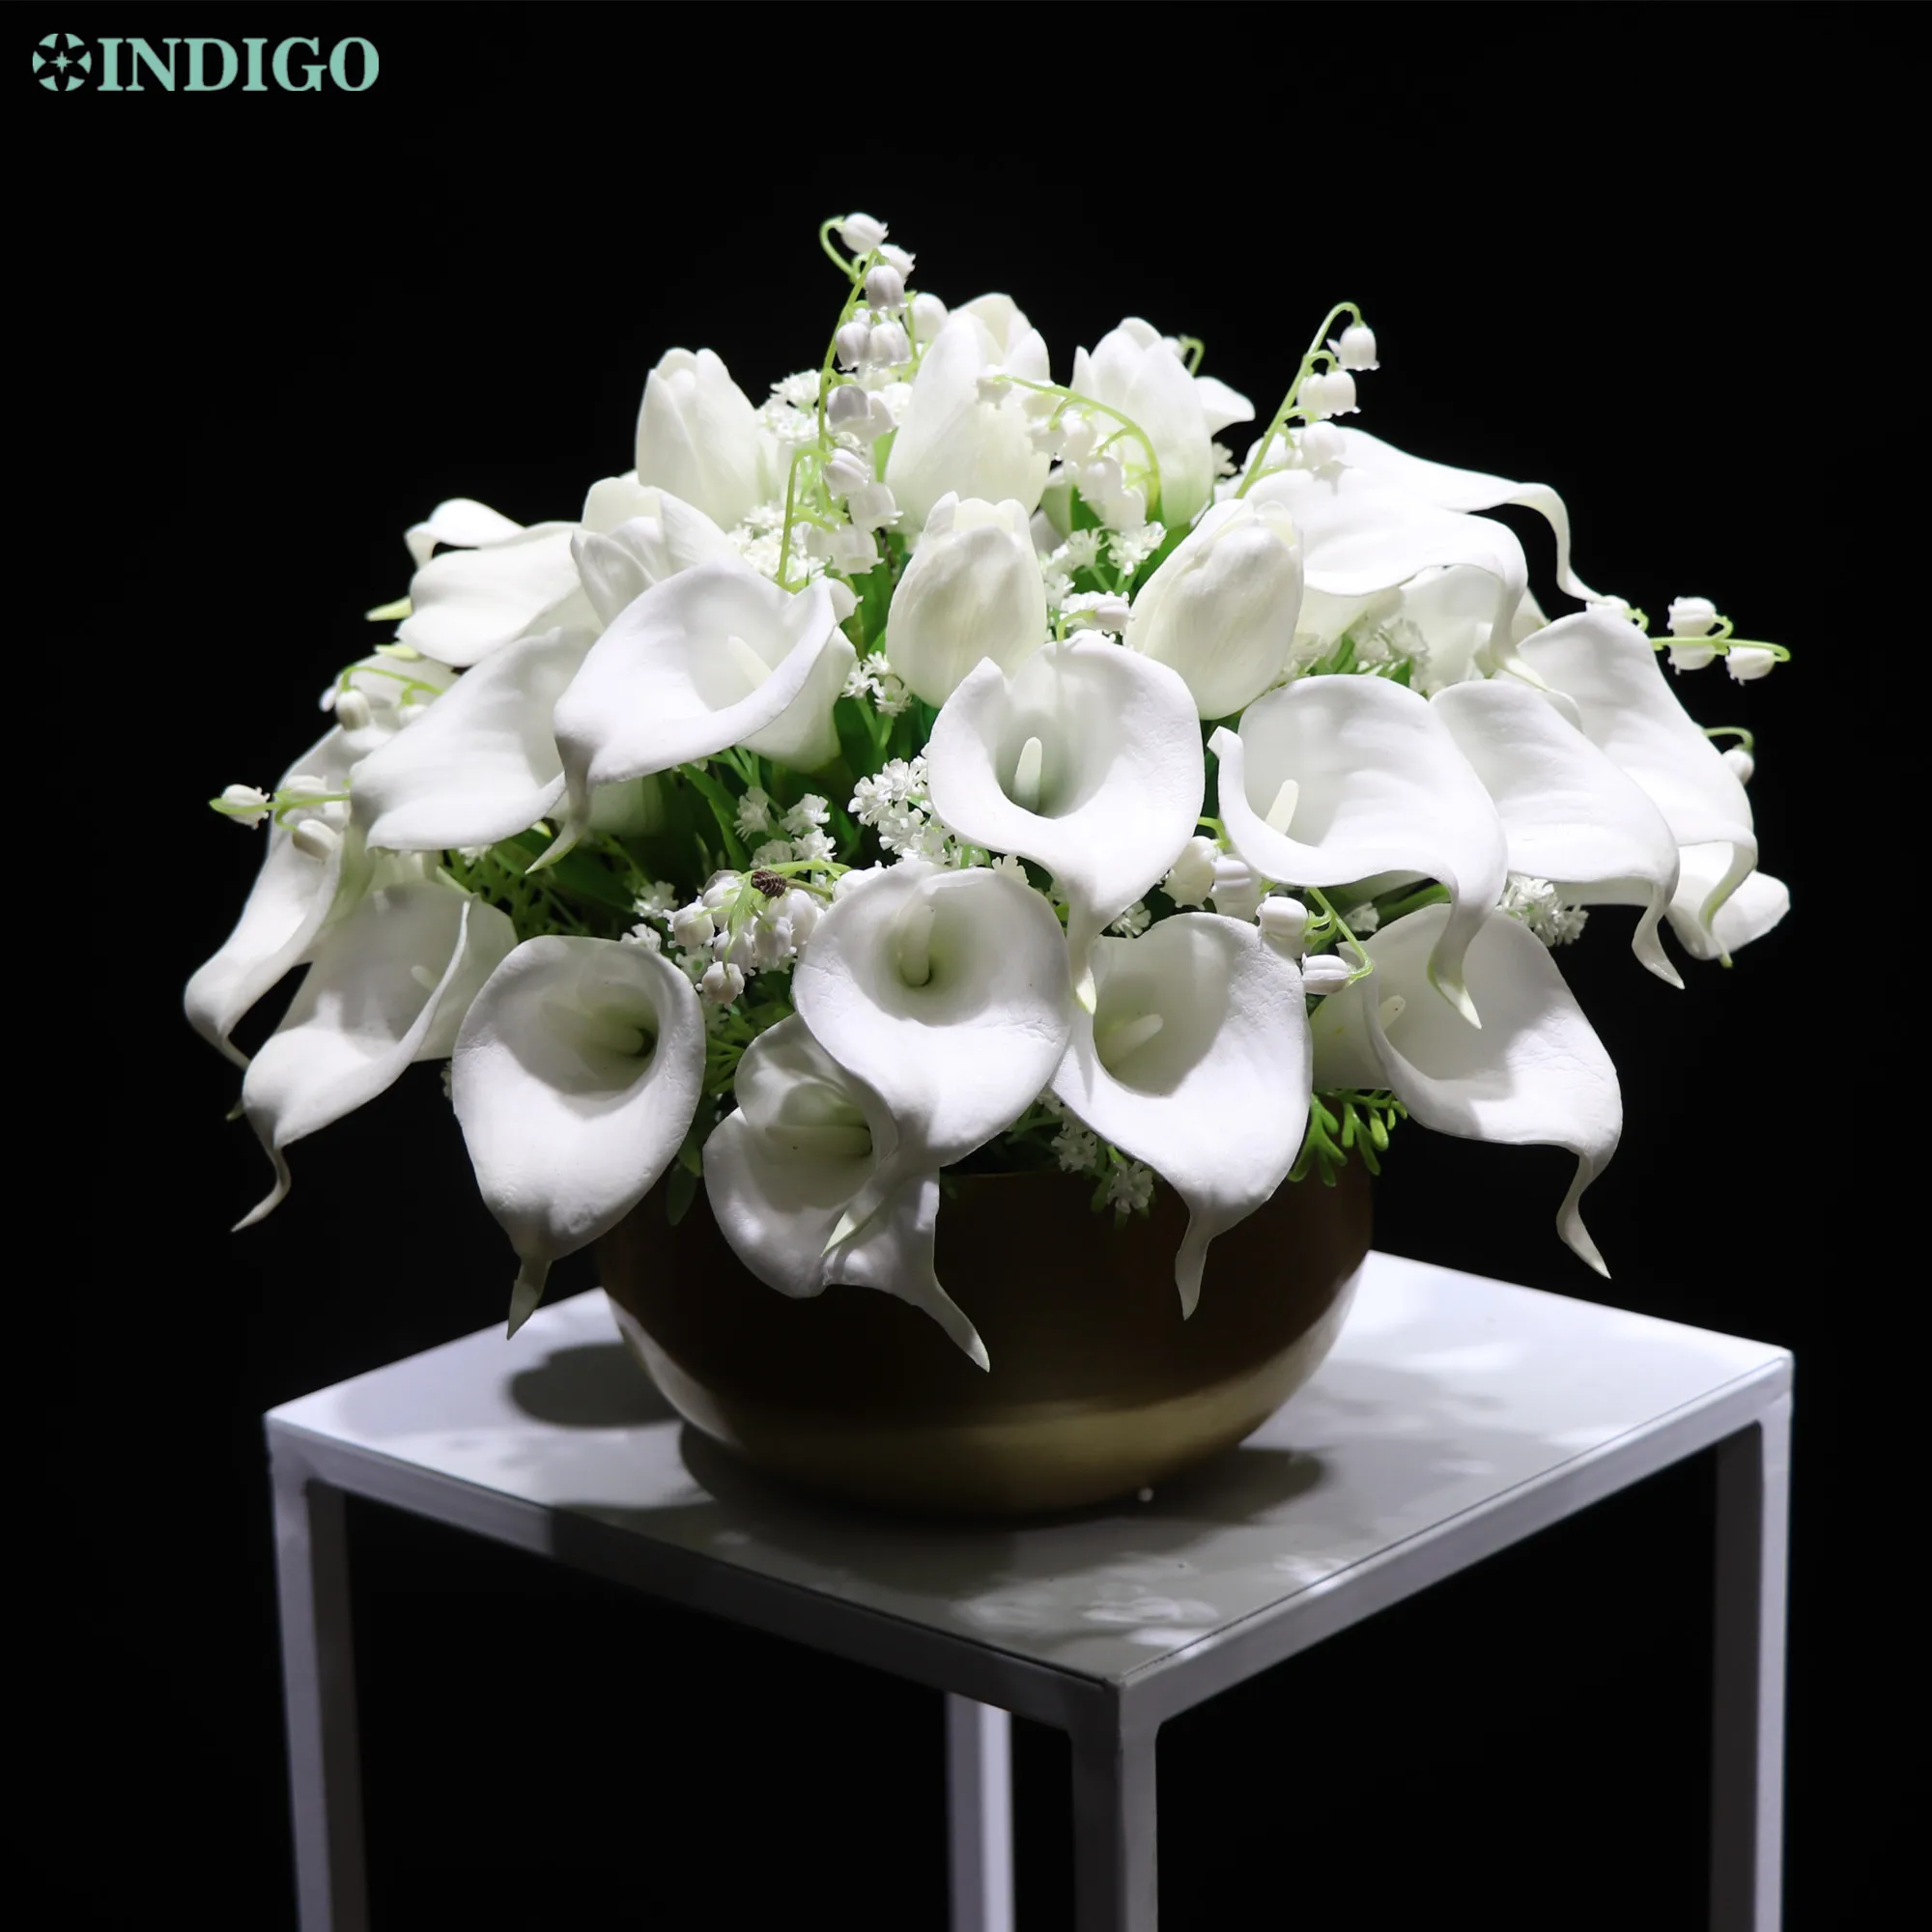 Flor artificial do plutônio da tulipa personalizou o arranjo indigo da flor da tabela (1 conjunto bonsai com potenciômetro do metal)